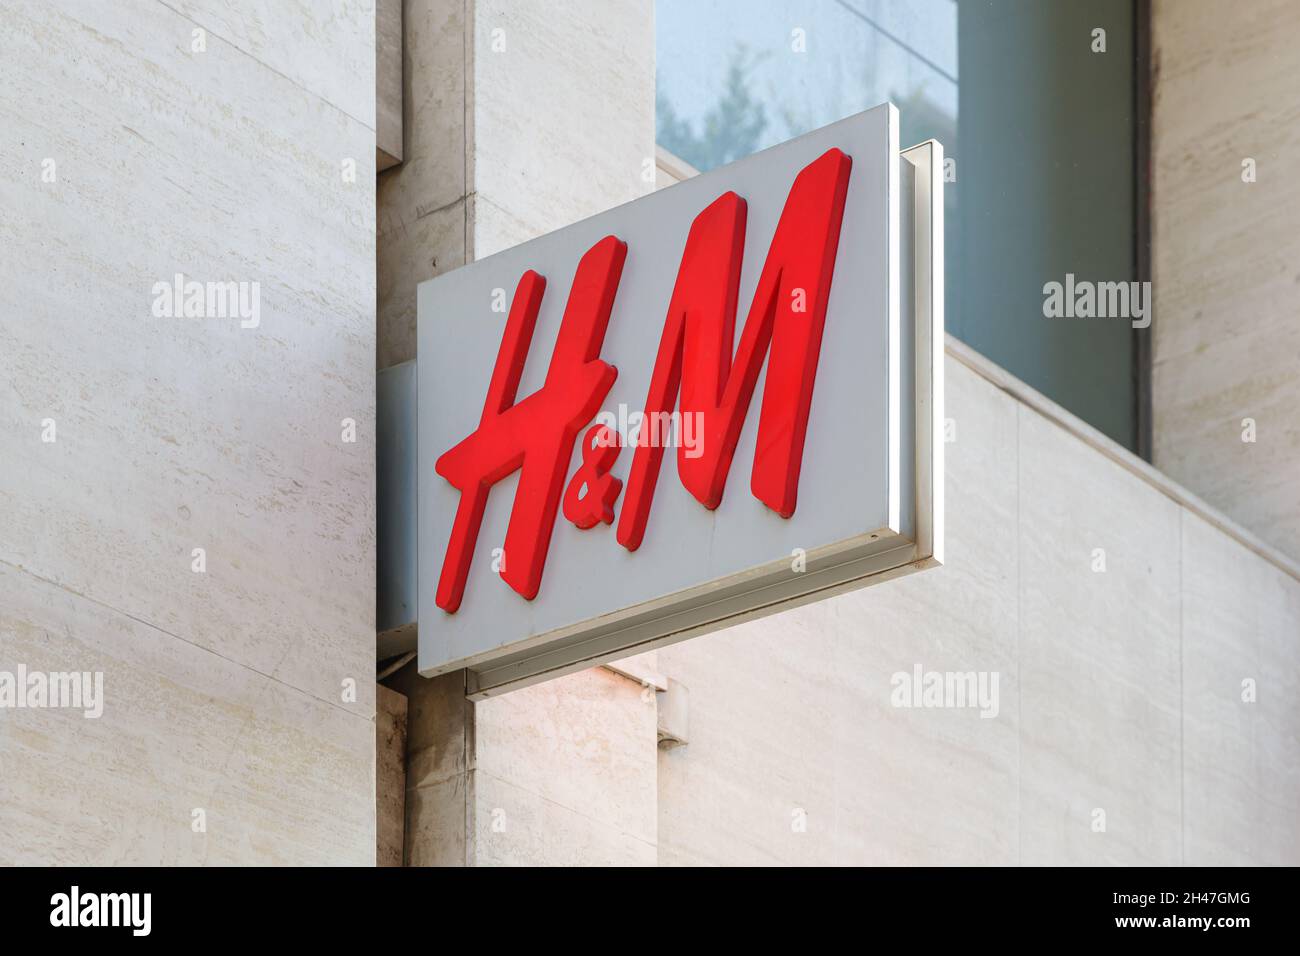 VALENCE, ESPAGNE - 26 OCTOBRE 2021 : H&M est une multinationale suédoise de l'habillement dont le siège est à Stockholm Banque D'Images